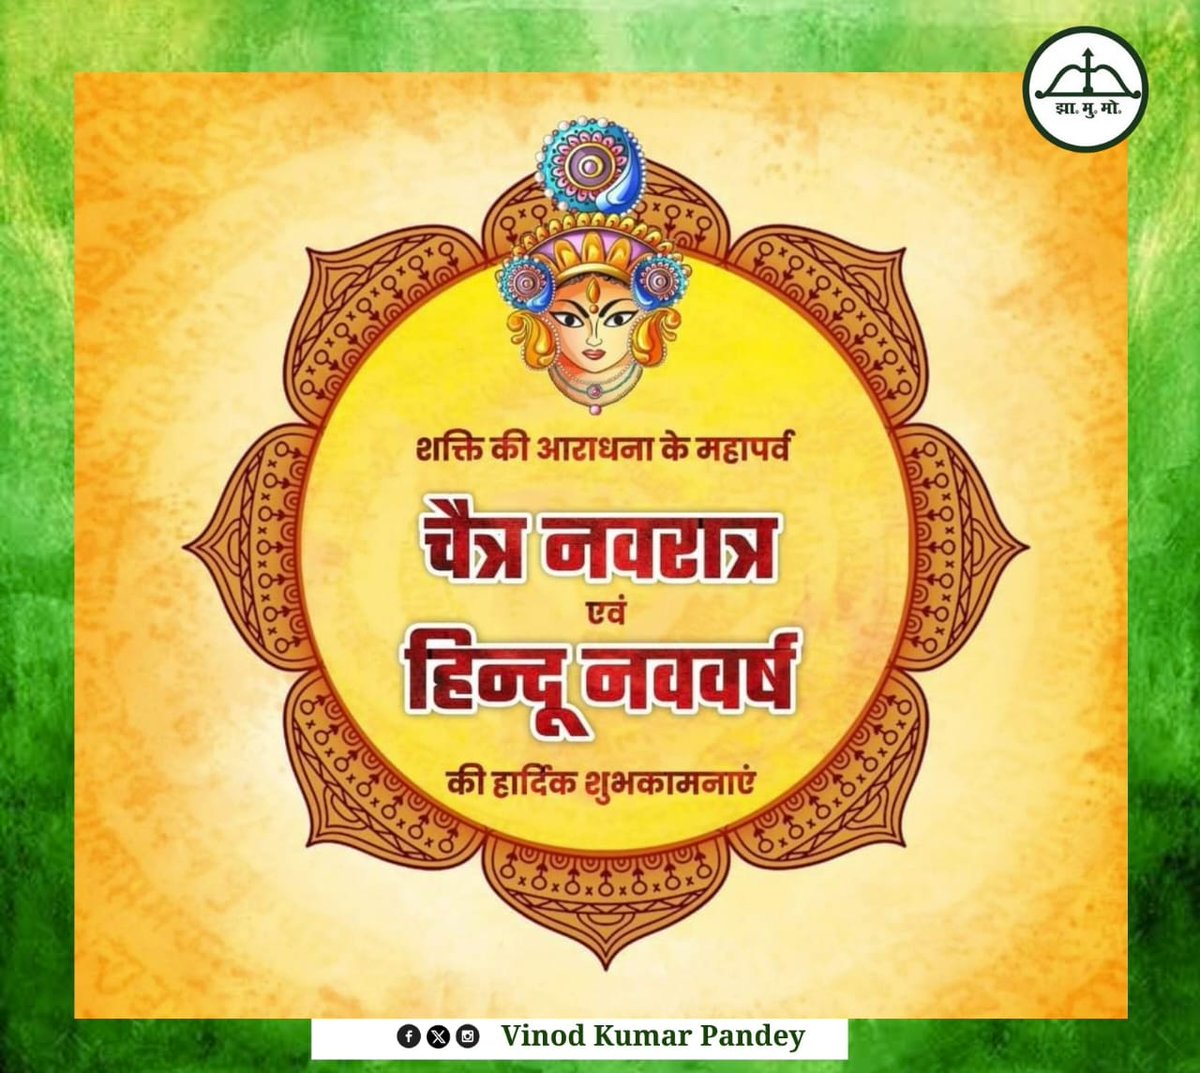 आप सभी को भारतीय नववर्ष व चैत्र नवरात्र के पावन पर्व की हार्दिक शुभकामनाएं। @JmmJharkhand